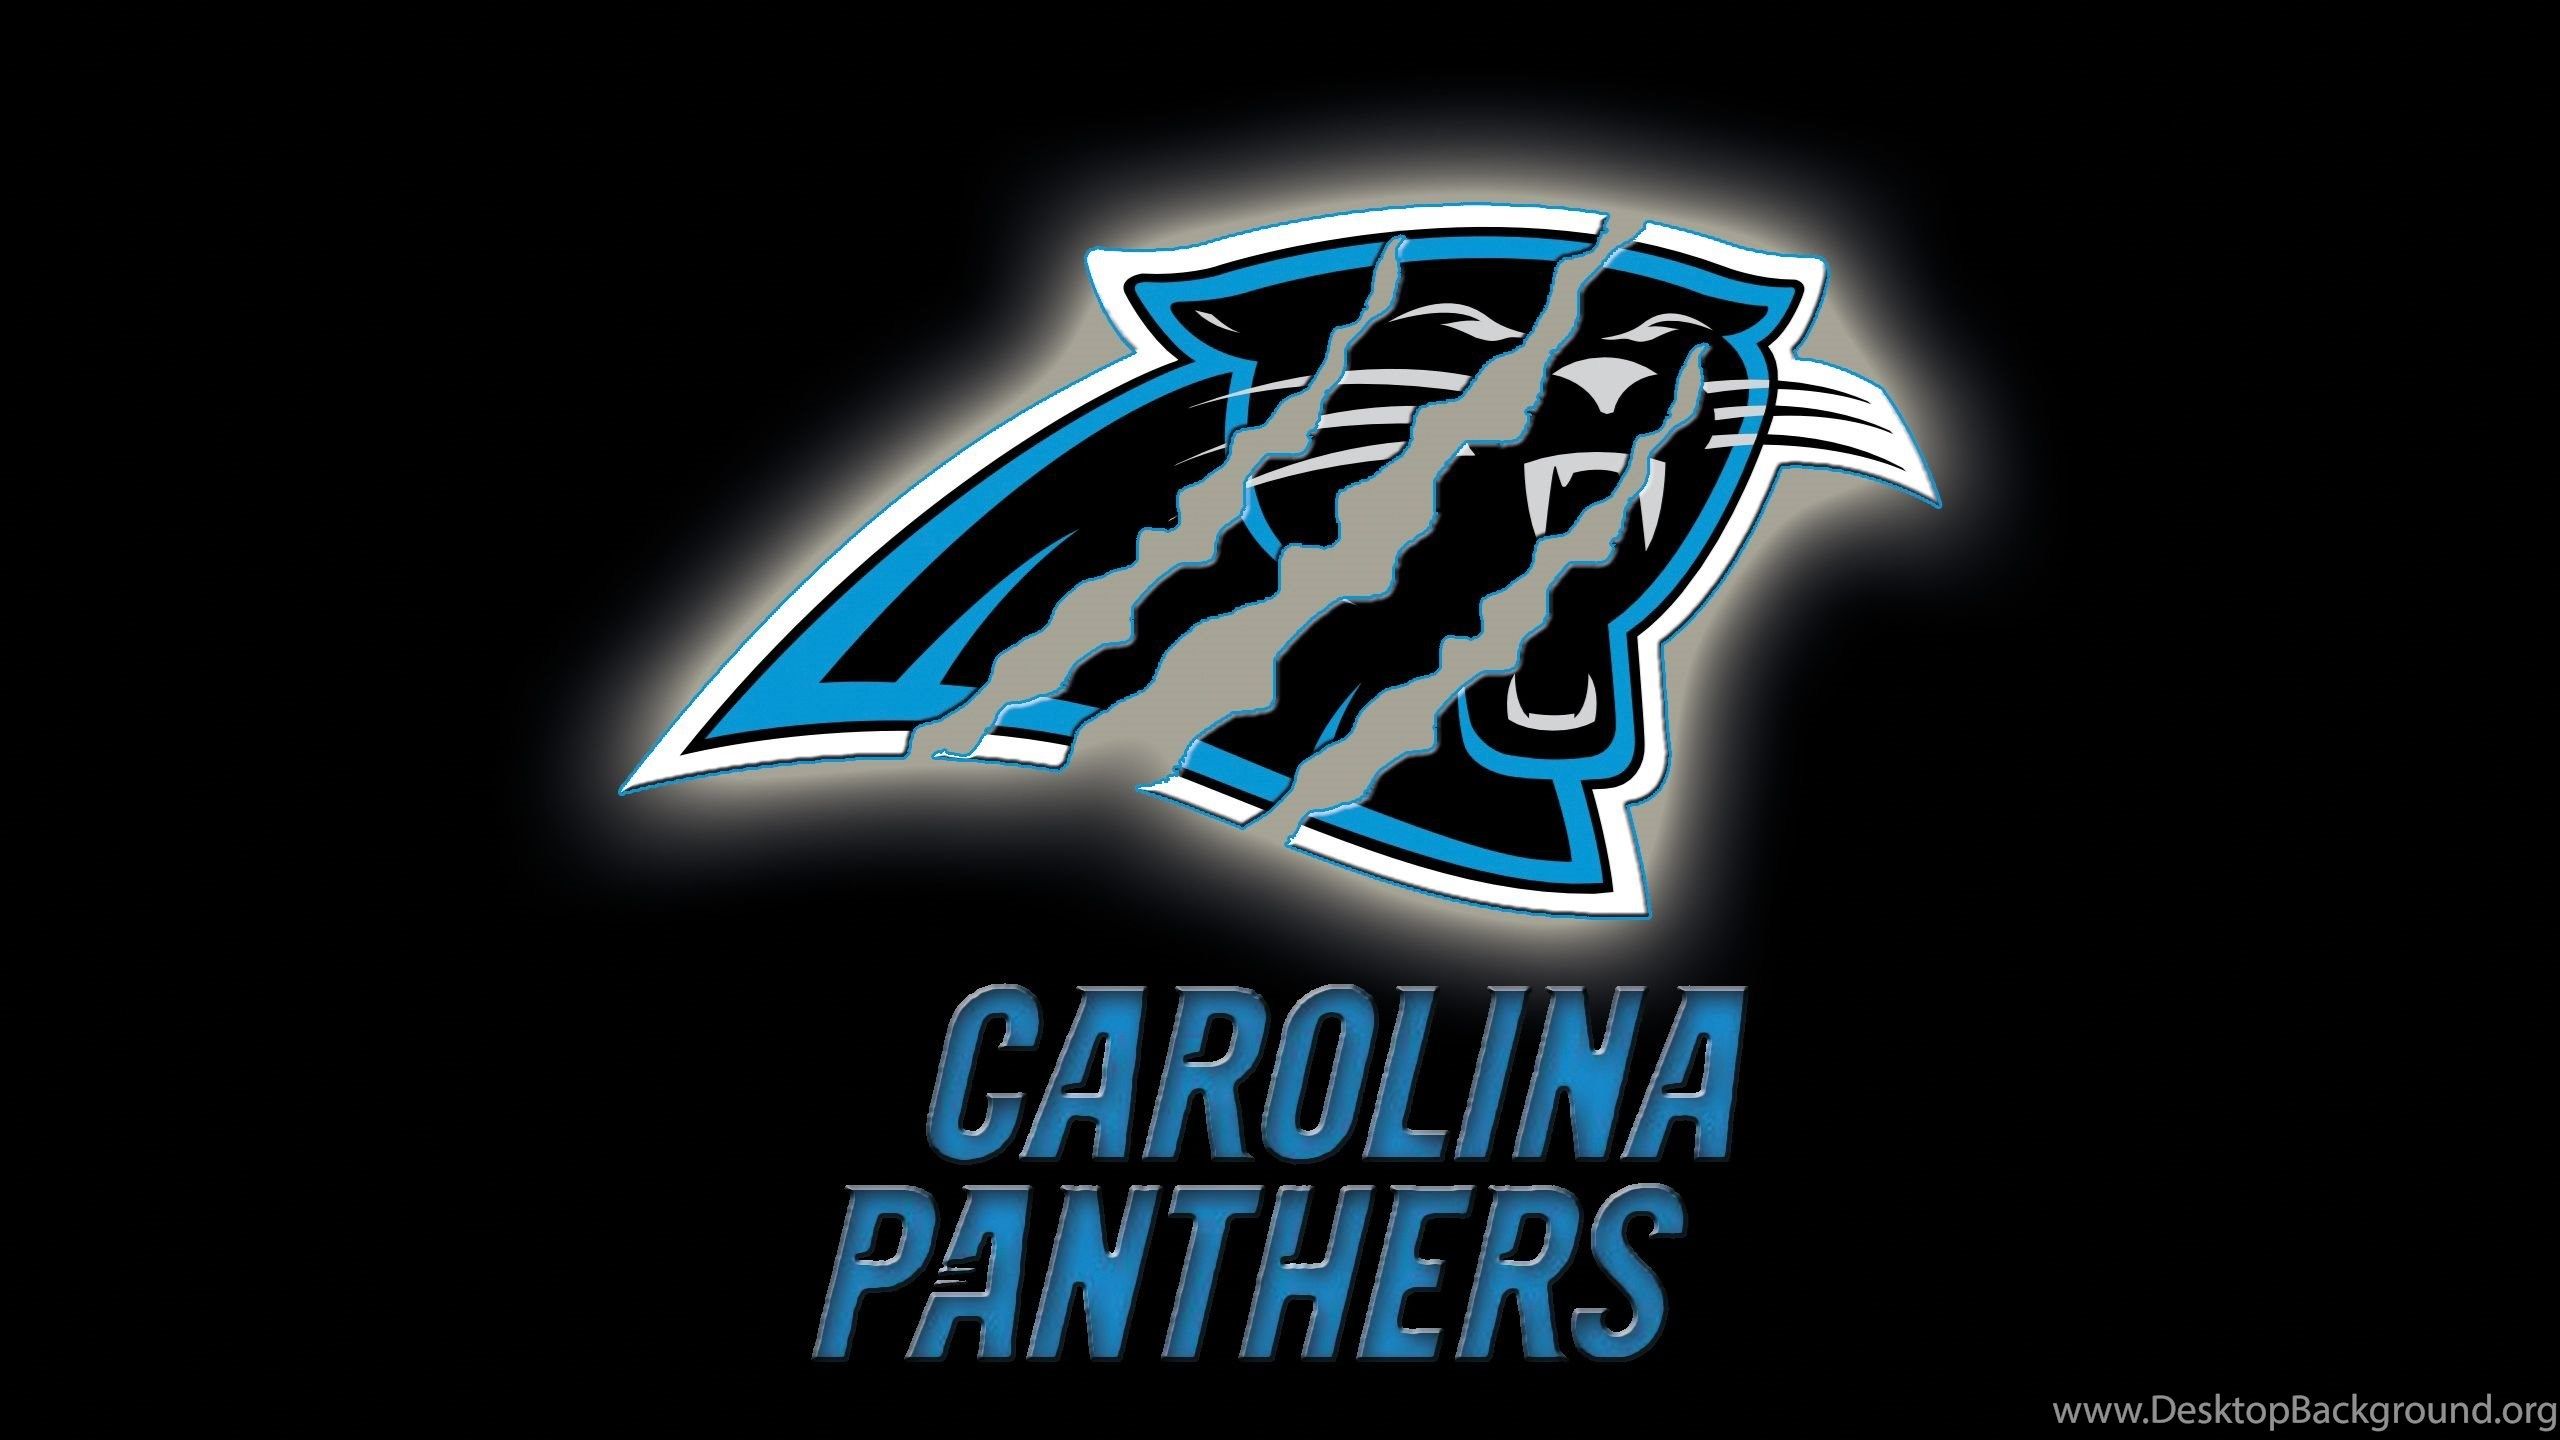 NFL Carolina Panthers Black Logo Team Wallpaper HD. Free Desktop